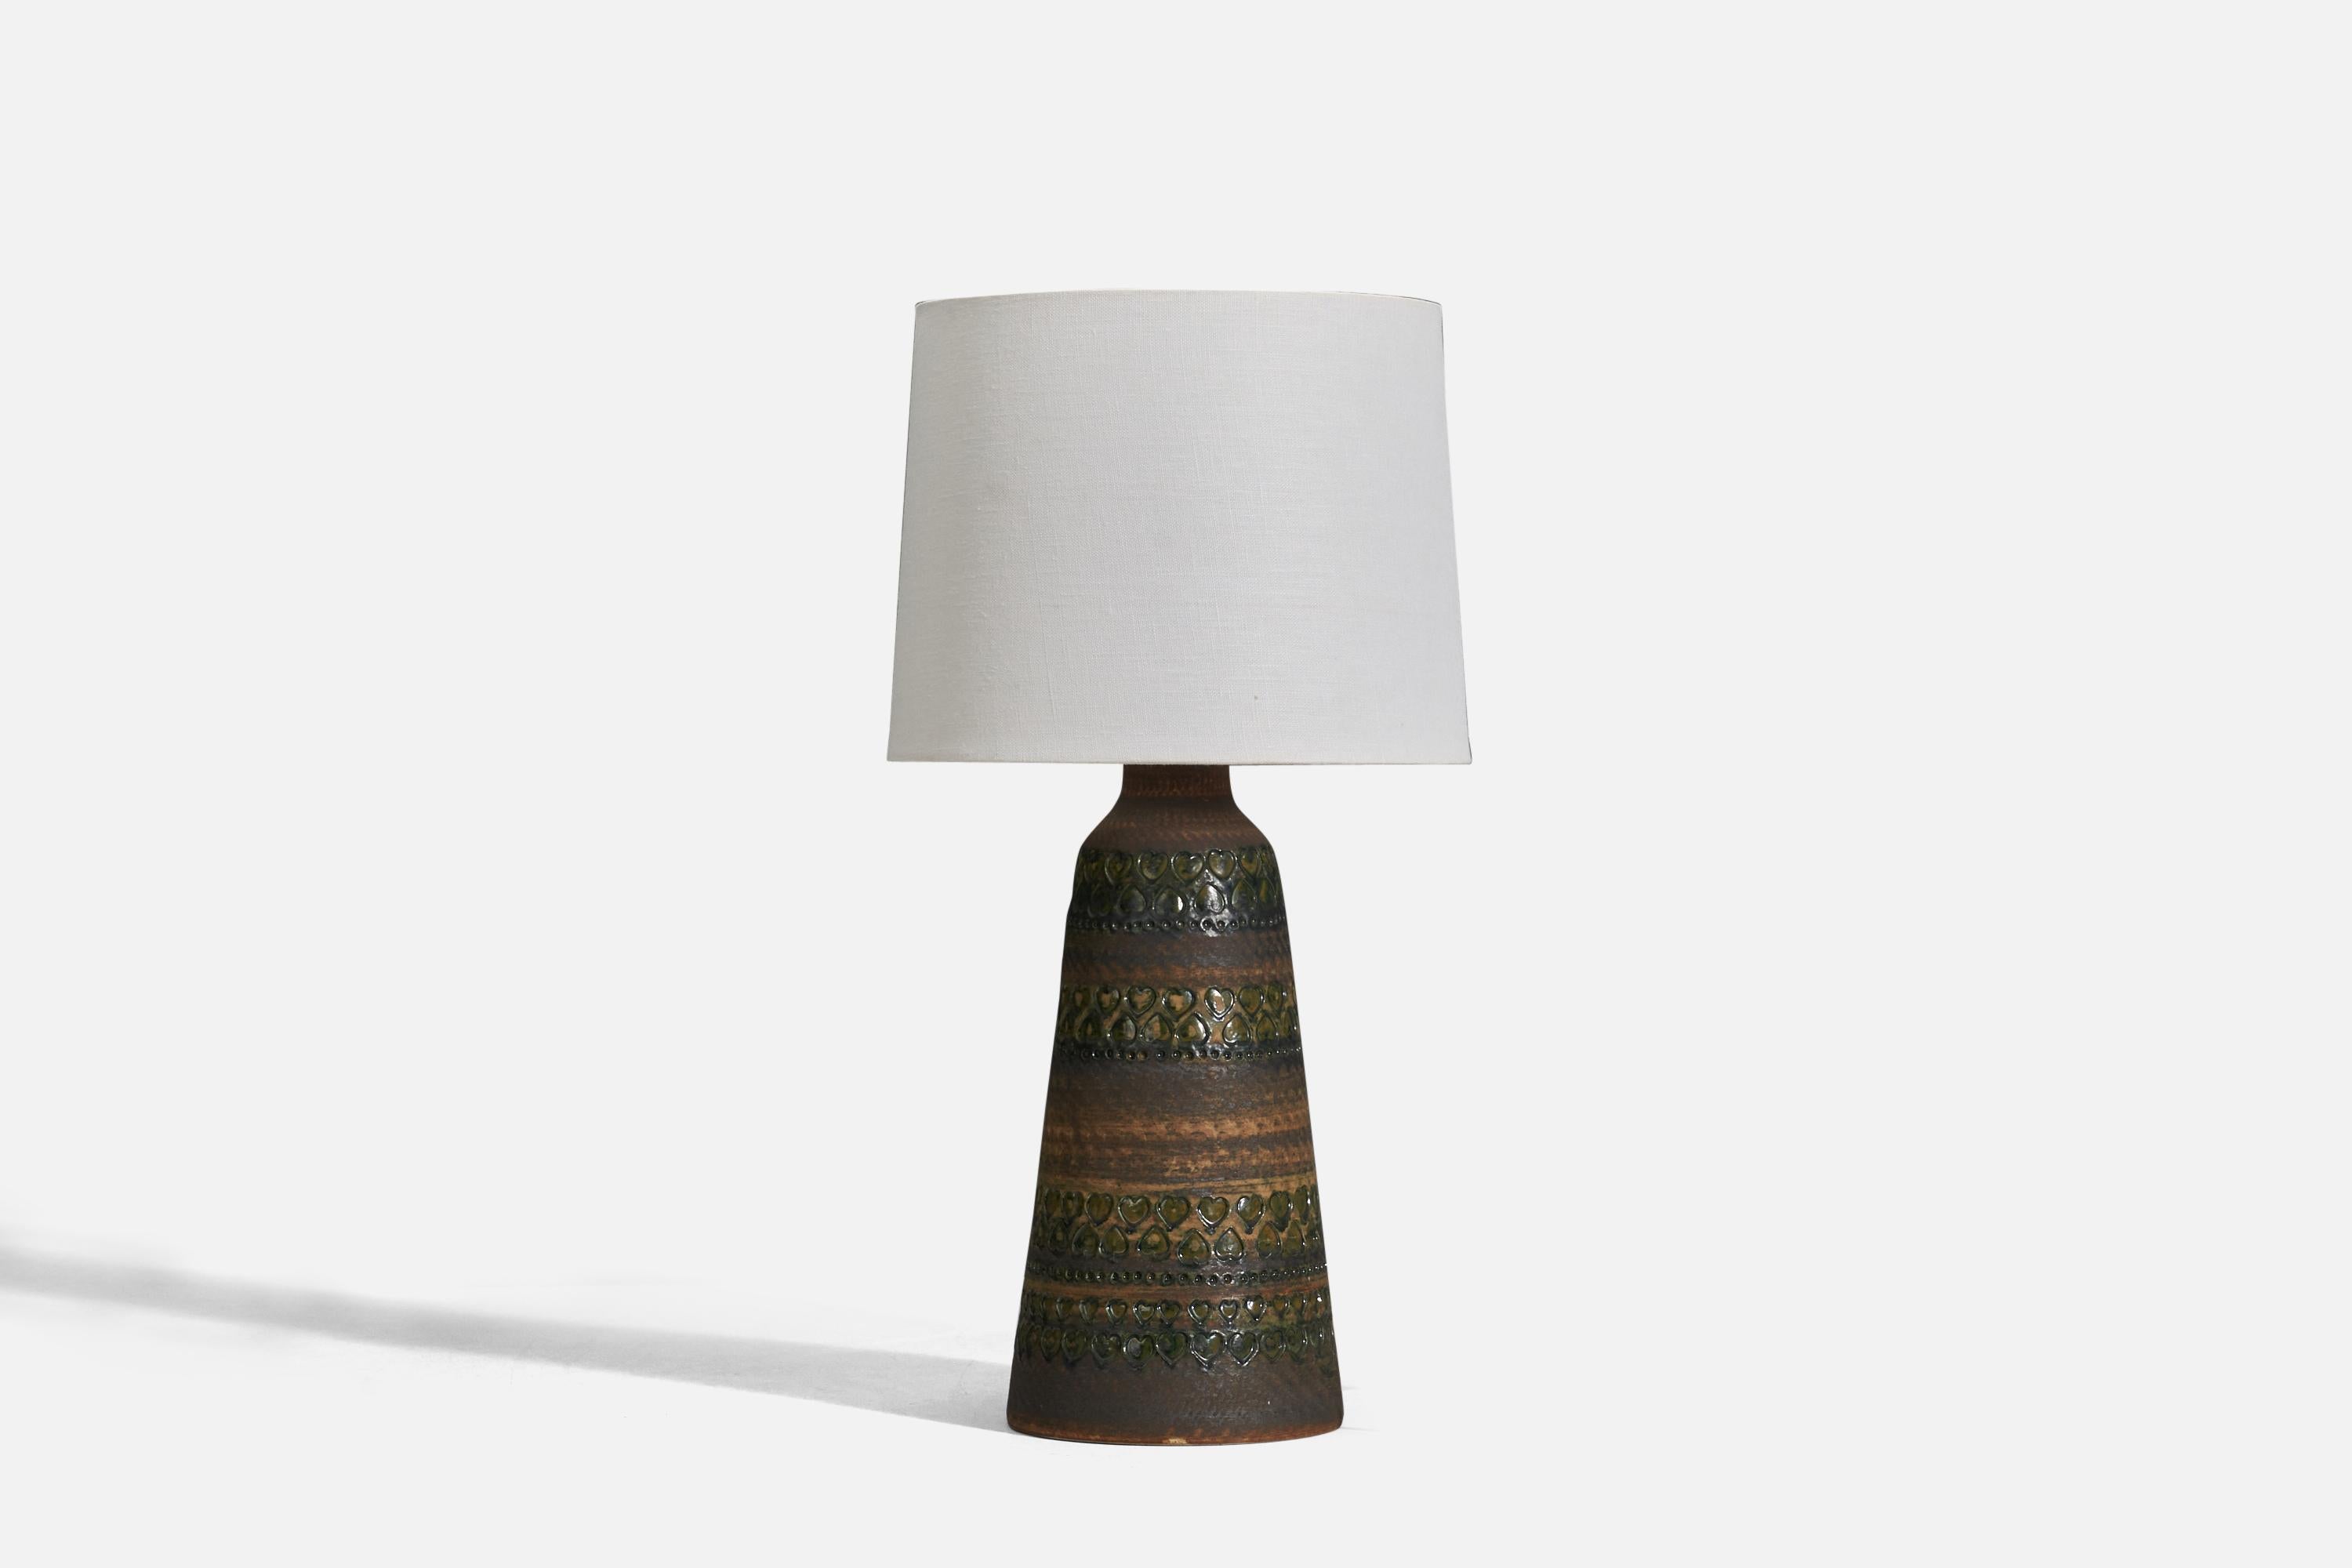 Lampe de table en grès émaillé brun conçue et produite par Tolla Keramik, Suède, années 1960.

Vendu sans abat-jour
Dimensions de la lampe (pouces) : 15 x 5,93 x 5,93 (hauteur x largeur x profondeur)
Dimensions de l'abat-jour (pouces) : 9 x 10 x 8